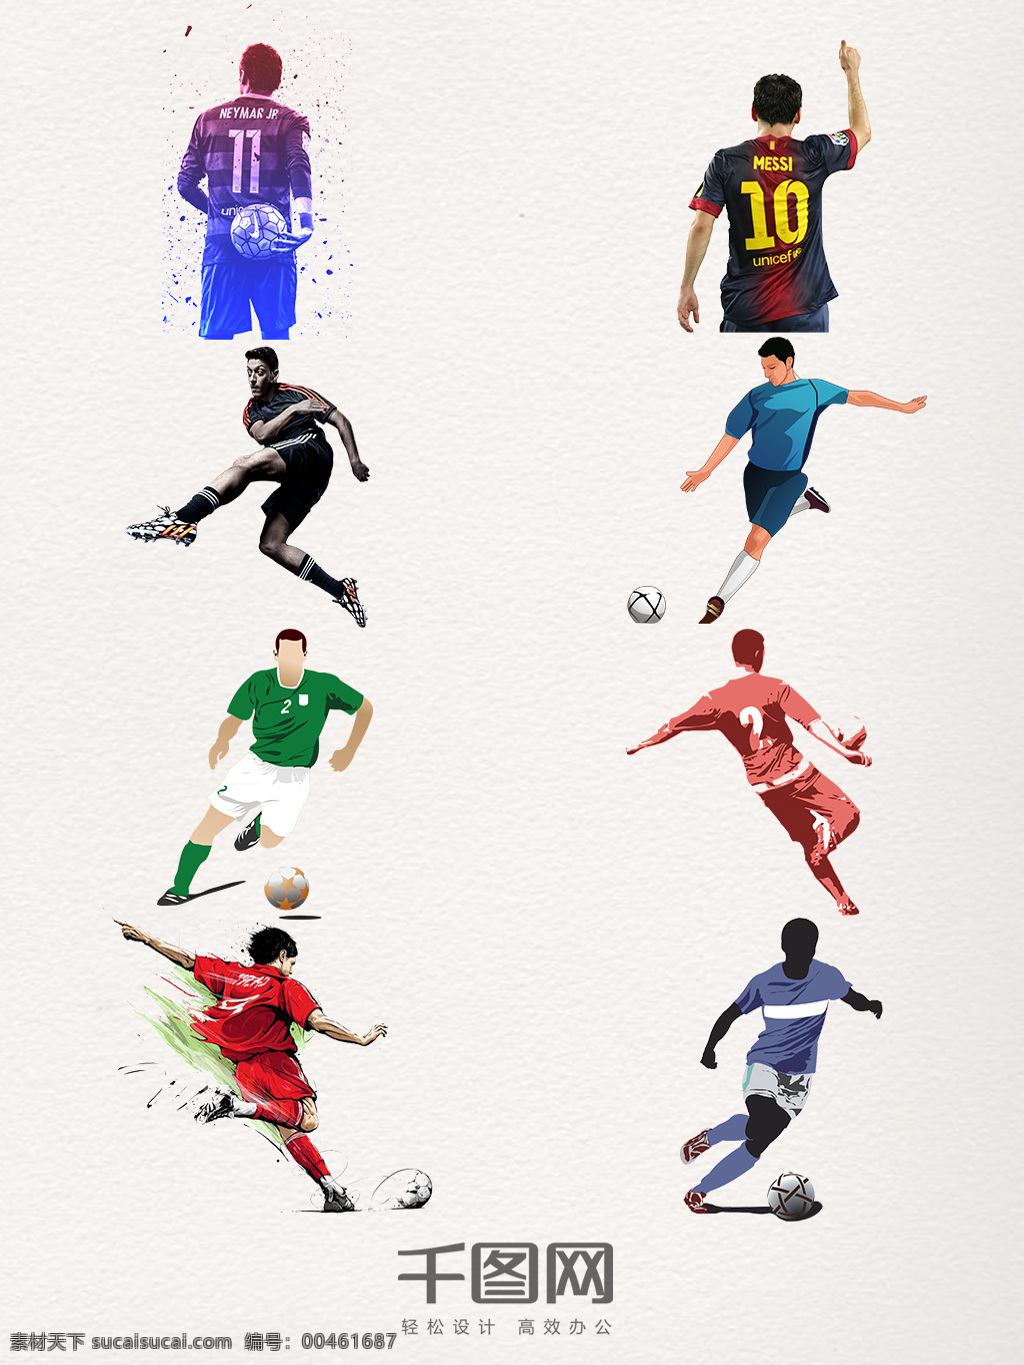 彩色 创意 足球 运动装 饰 世界足球日 踢球 运动 手绘 简约 体育运动 奥运会